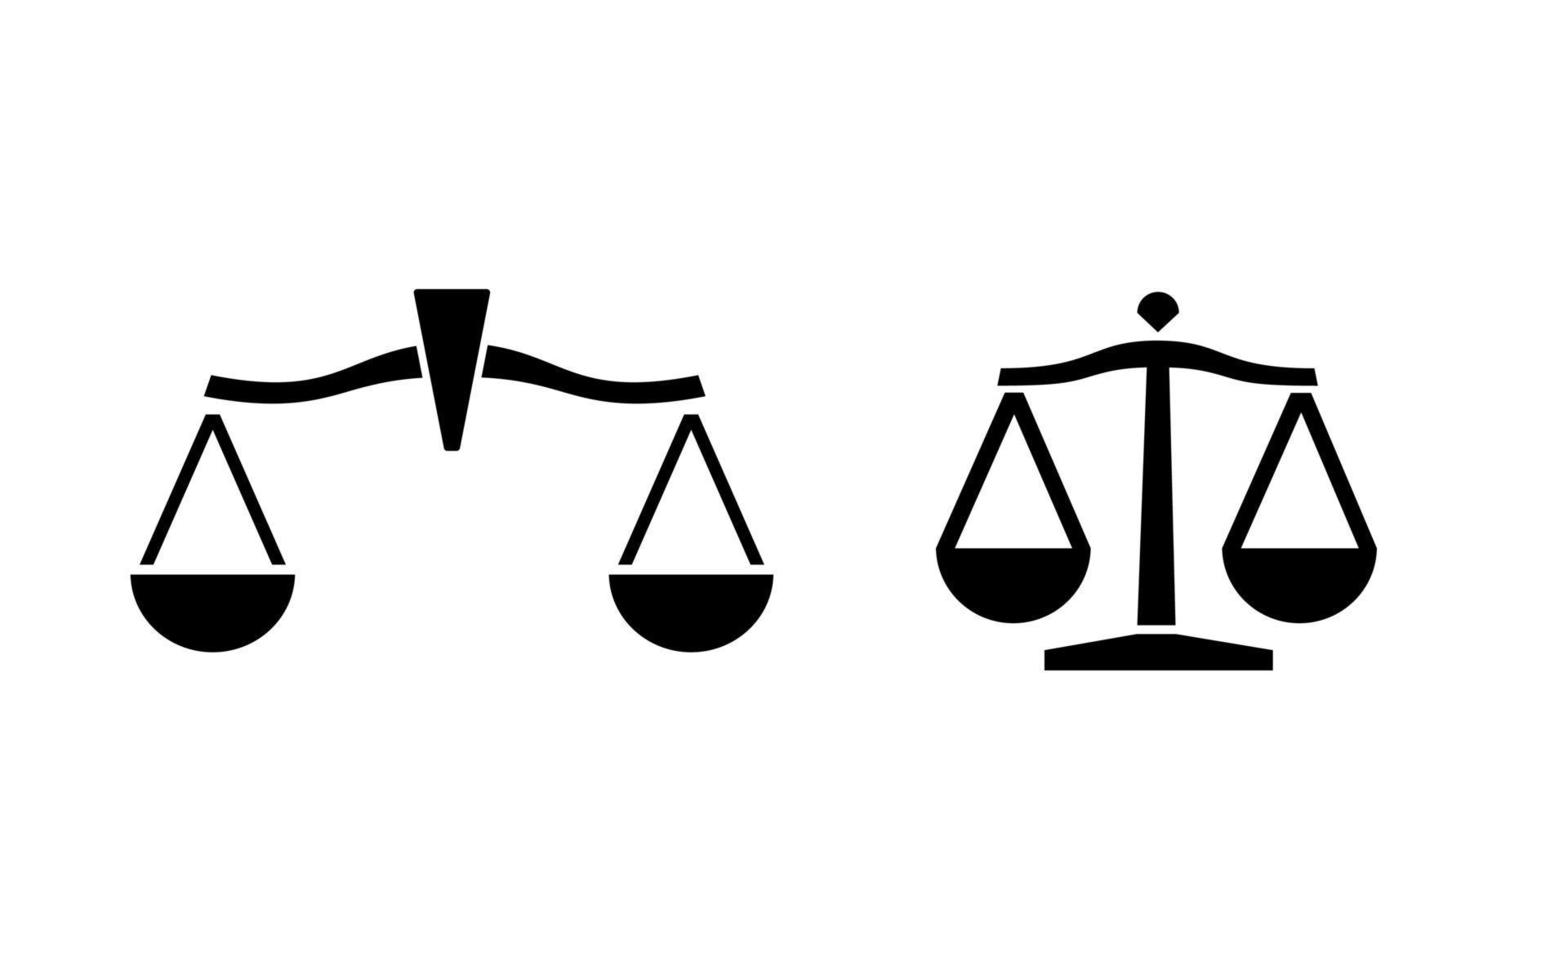 wet oordeel juridische schalen logo vector